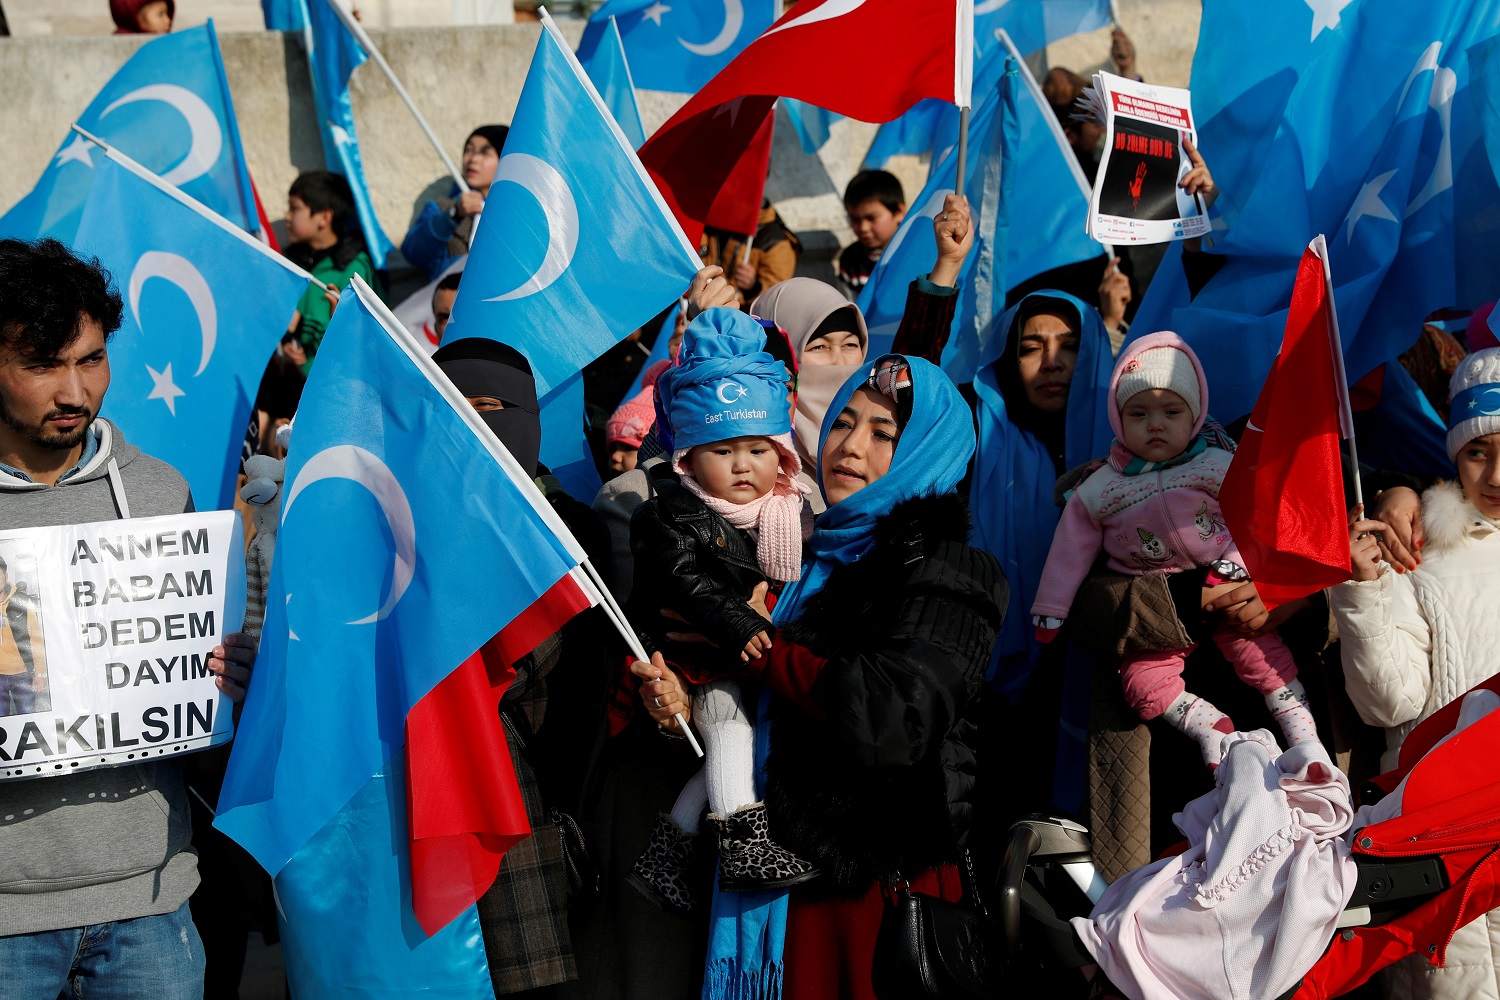 مسلمو الأويغور يتظاهرون أمام مسجد الفاتح في اسطنبول تعبيرا عن رفضهم لسياسات الدول الصينية تجاههم، 28 كانون أول/ديسمبر 2018. (رويترز)